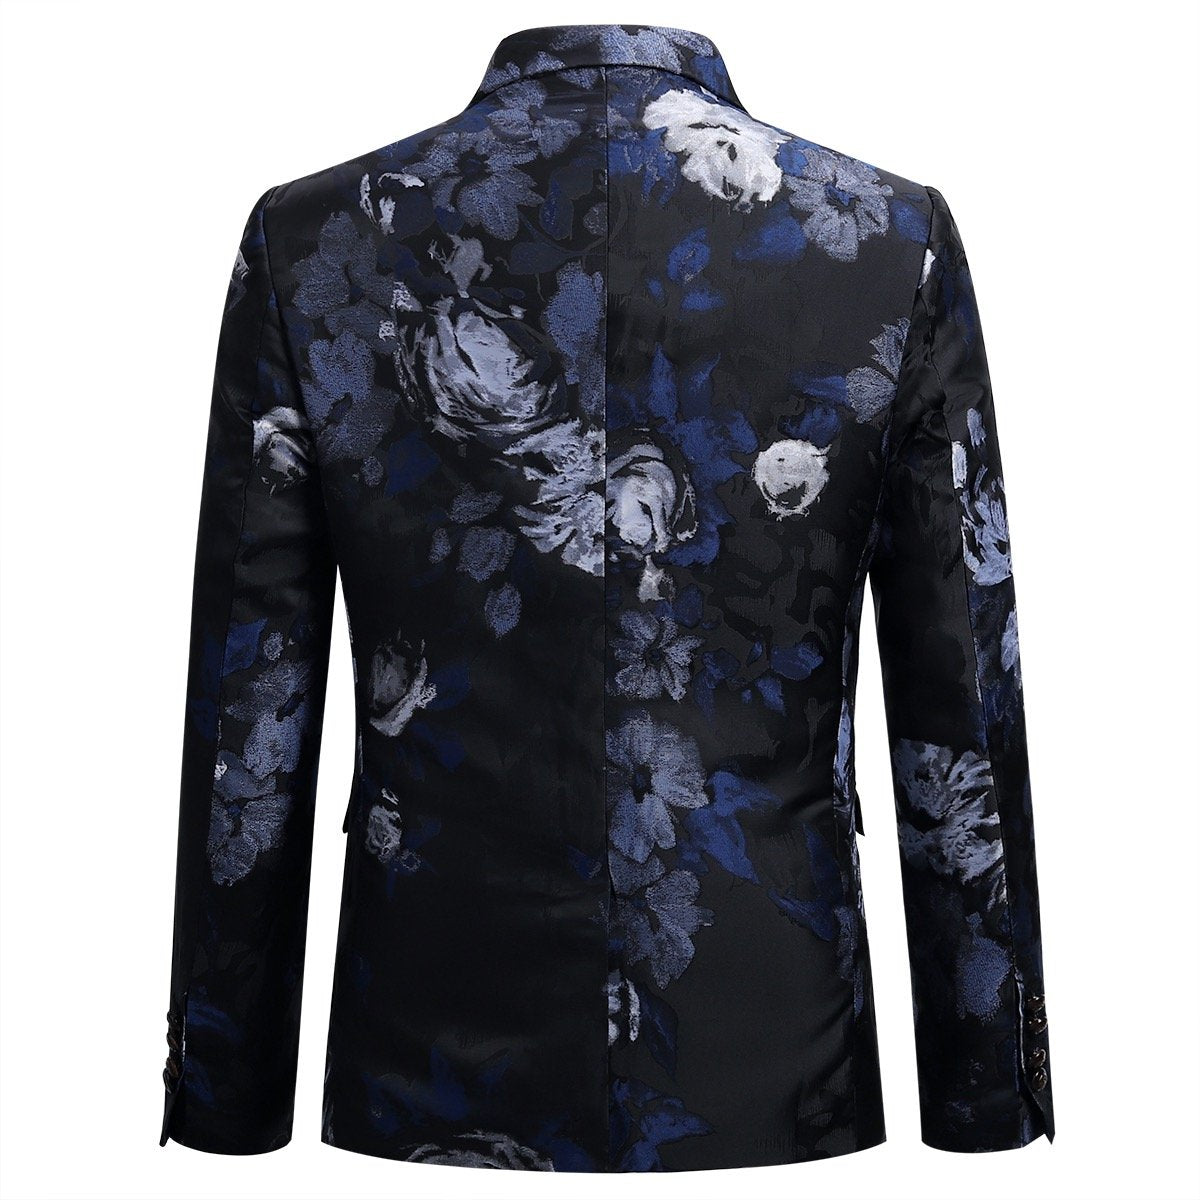 Allover Floral Print Suit 3-Piece Blue Suit